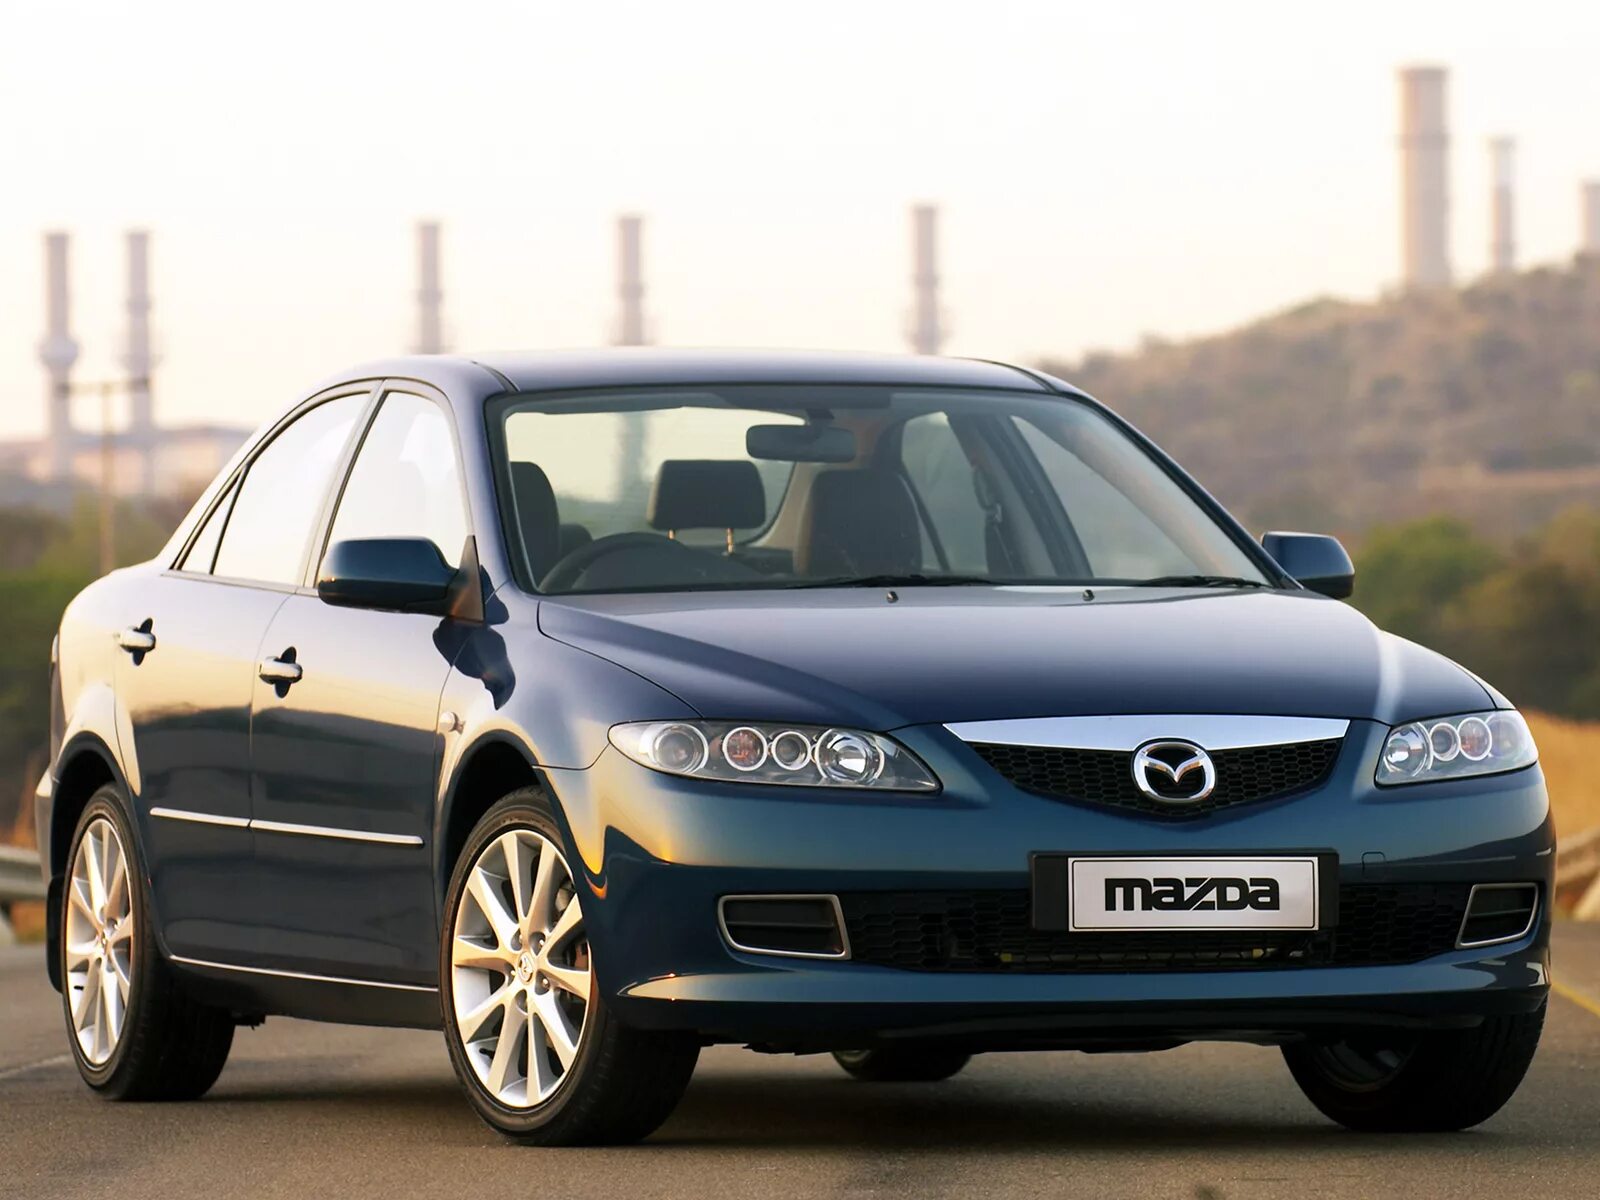 Мазда 6 2.0 2006 года. Mazda 6 gg. Mazda 6 gg 2005. Mazda 6 gg 2002. Мазда 6 седан 2005.